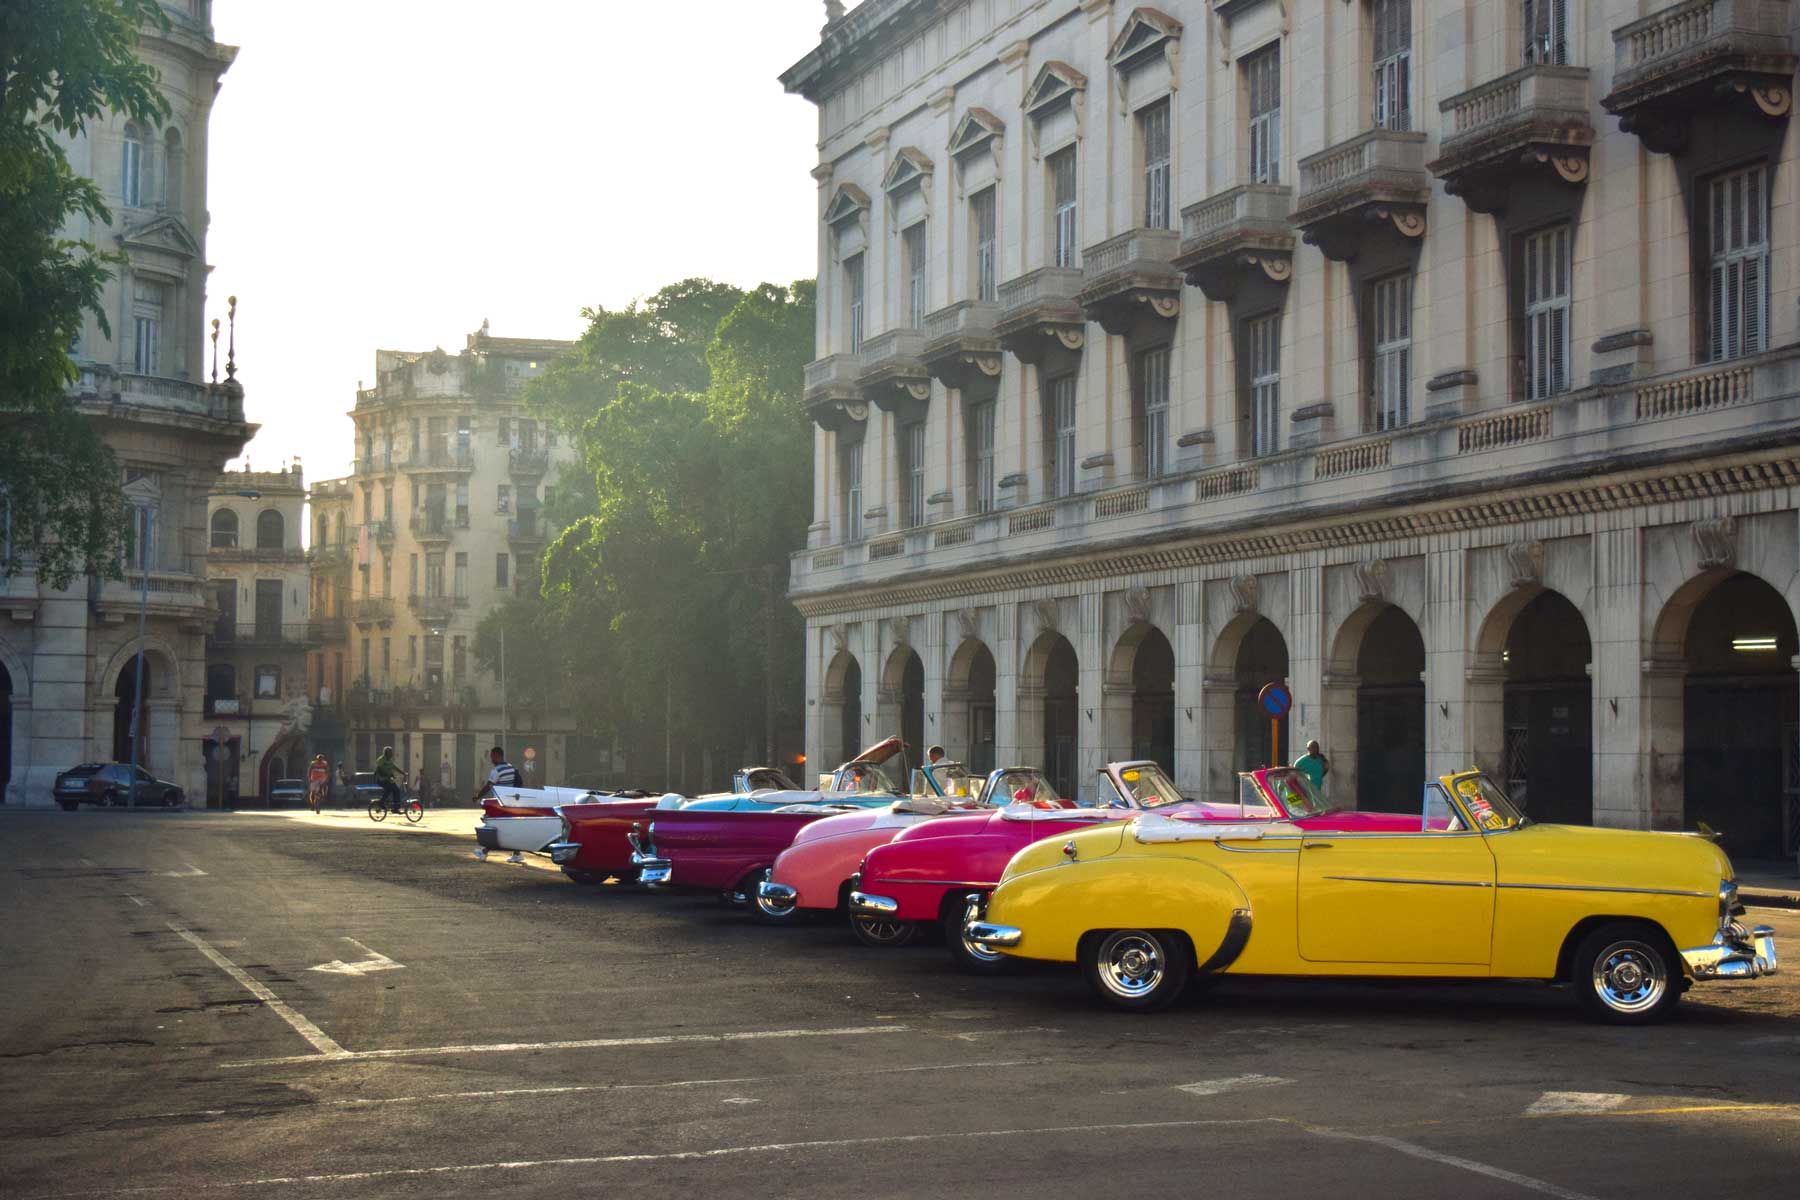 L'Avana, Cuba, u Patrimoniu Mondiale di l'UNESCO chì mostra vitture parcheggiate in u centru storicu di a cità à l'alba.